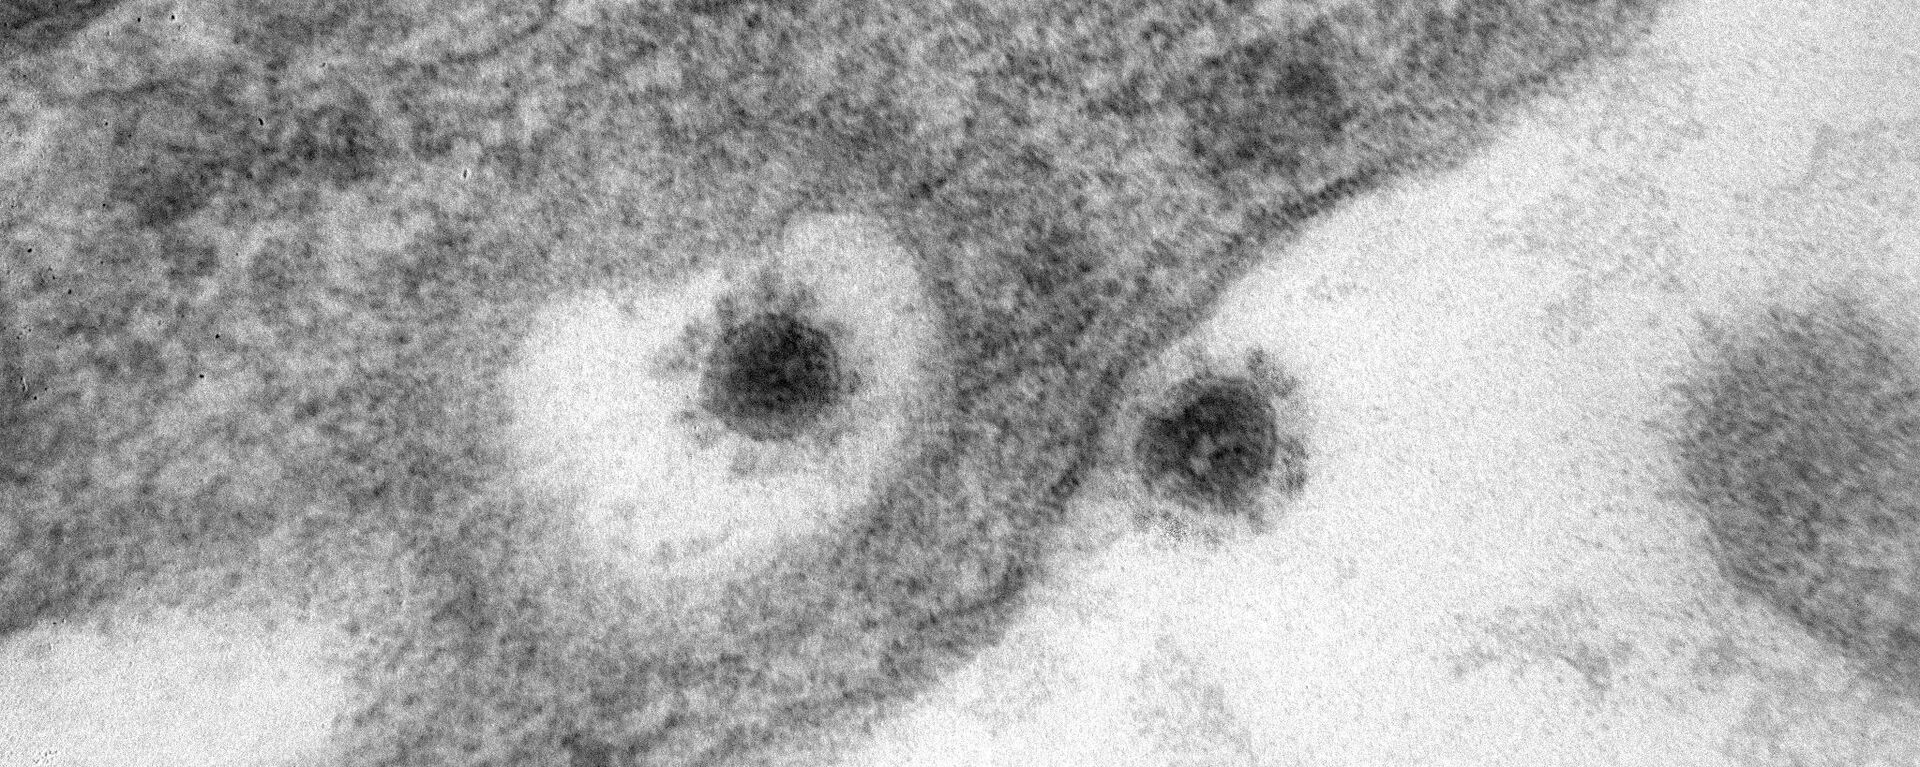 Imagen tomada con un microscopio de la cepa delta del SARS-CoV-2 - Sputnik Mundo, 1920, 25.10.2021